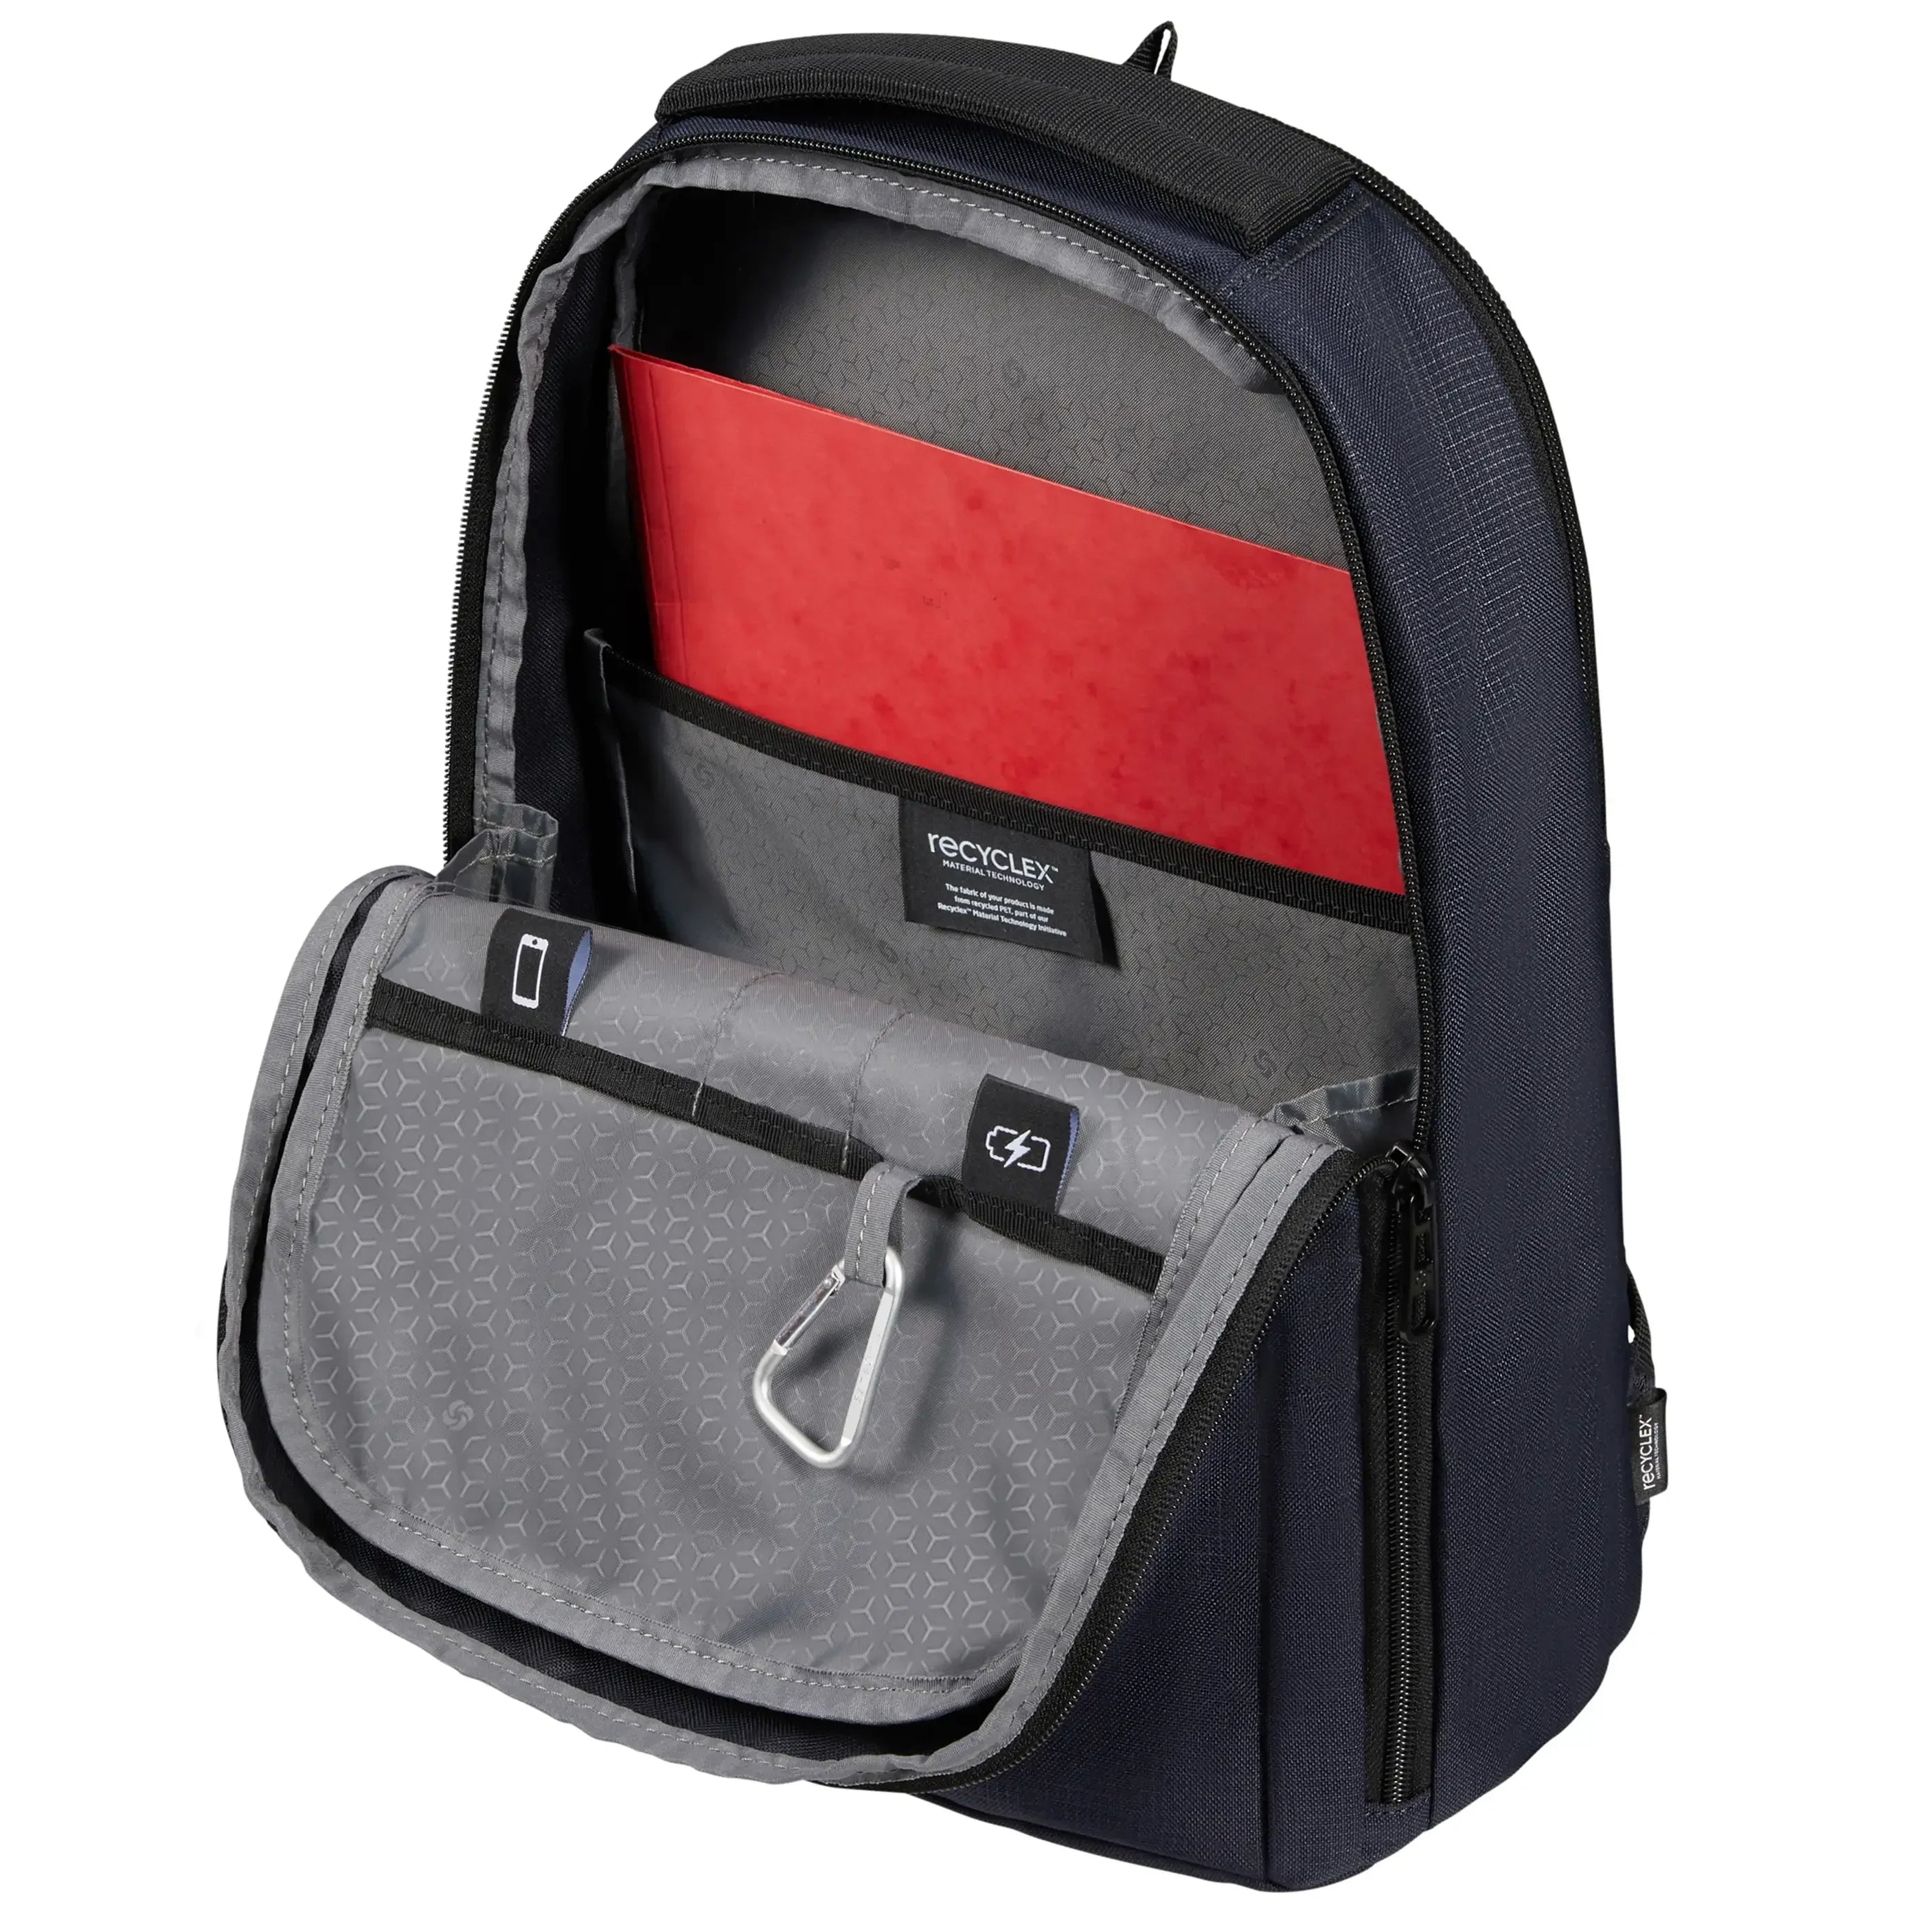 Samsonite Roader Laptop Backpack S 42 cm - drifter gray